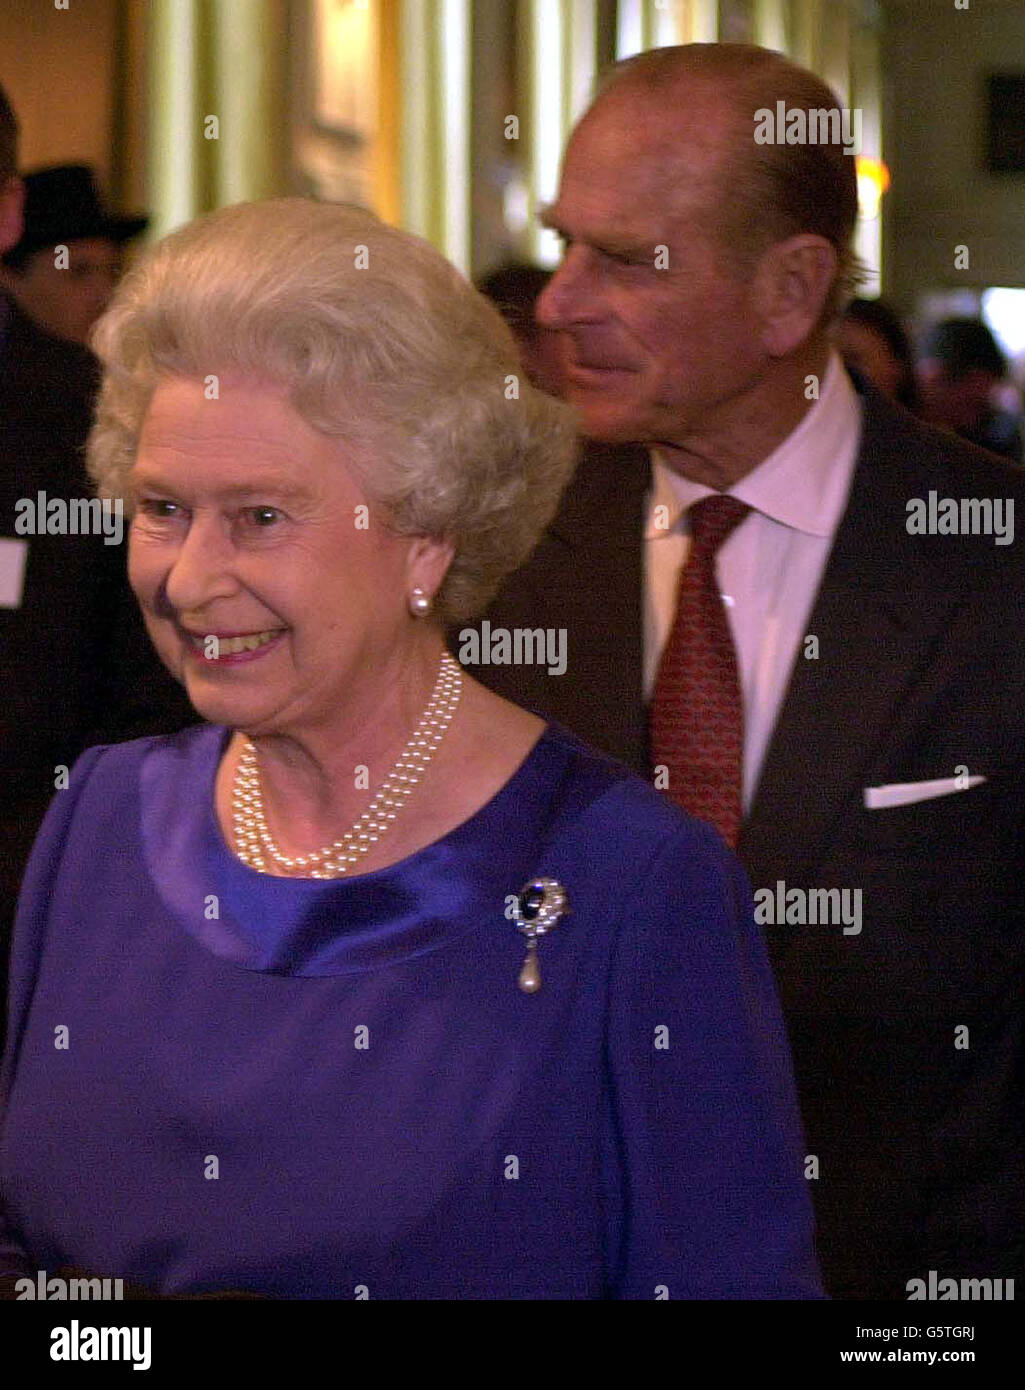 La Regina Elisabetta II ospita l'accoglienza reale all'Holyrood Palace di Edimburgo, per celebrare il suo Giubileo d'oro. Foto Stock